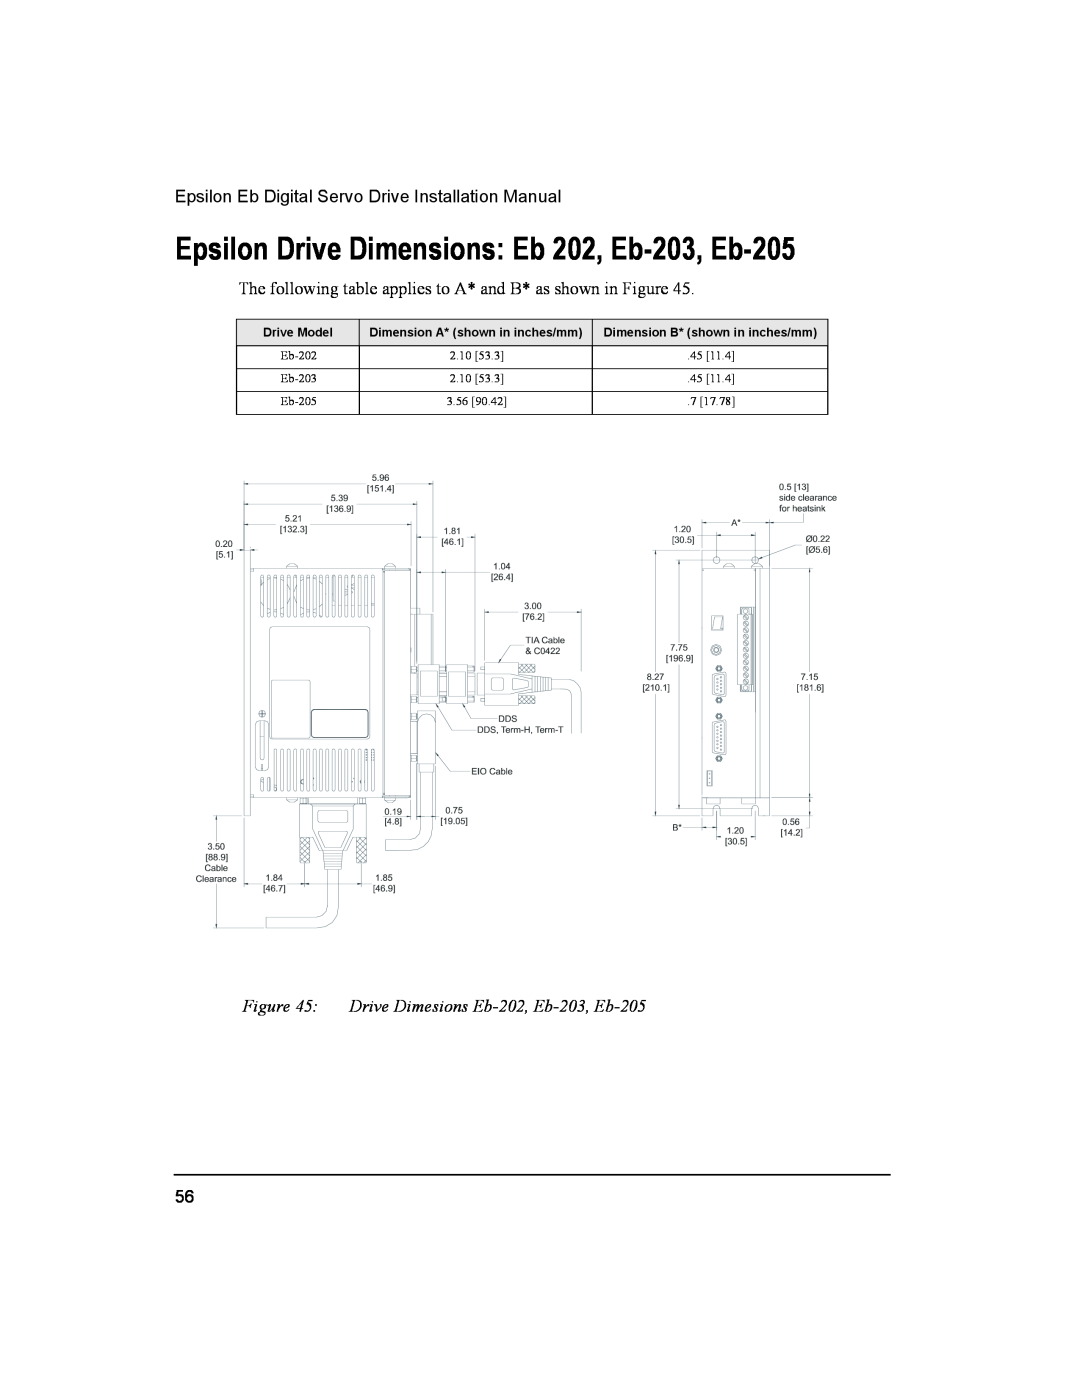 Emerson 400501-05 Epsilon Drive Dimensions Eb 202, Eb-203, Eb-205, Drive Dimesions Eb-202, Eb-203, Eb-205, Drive Model 